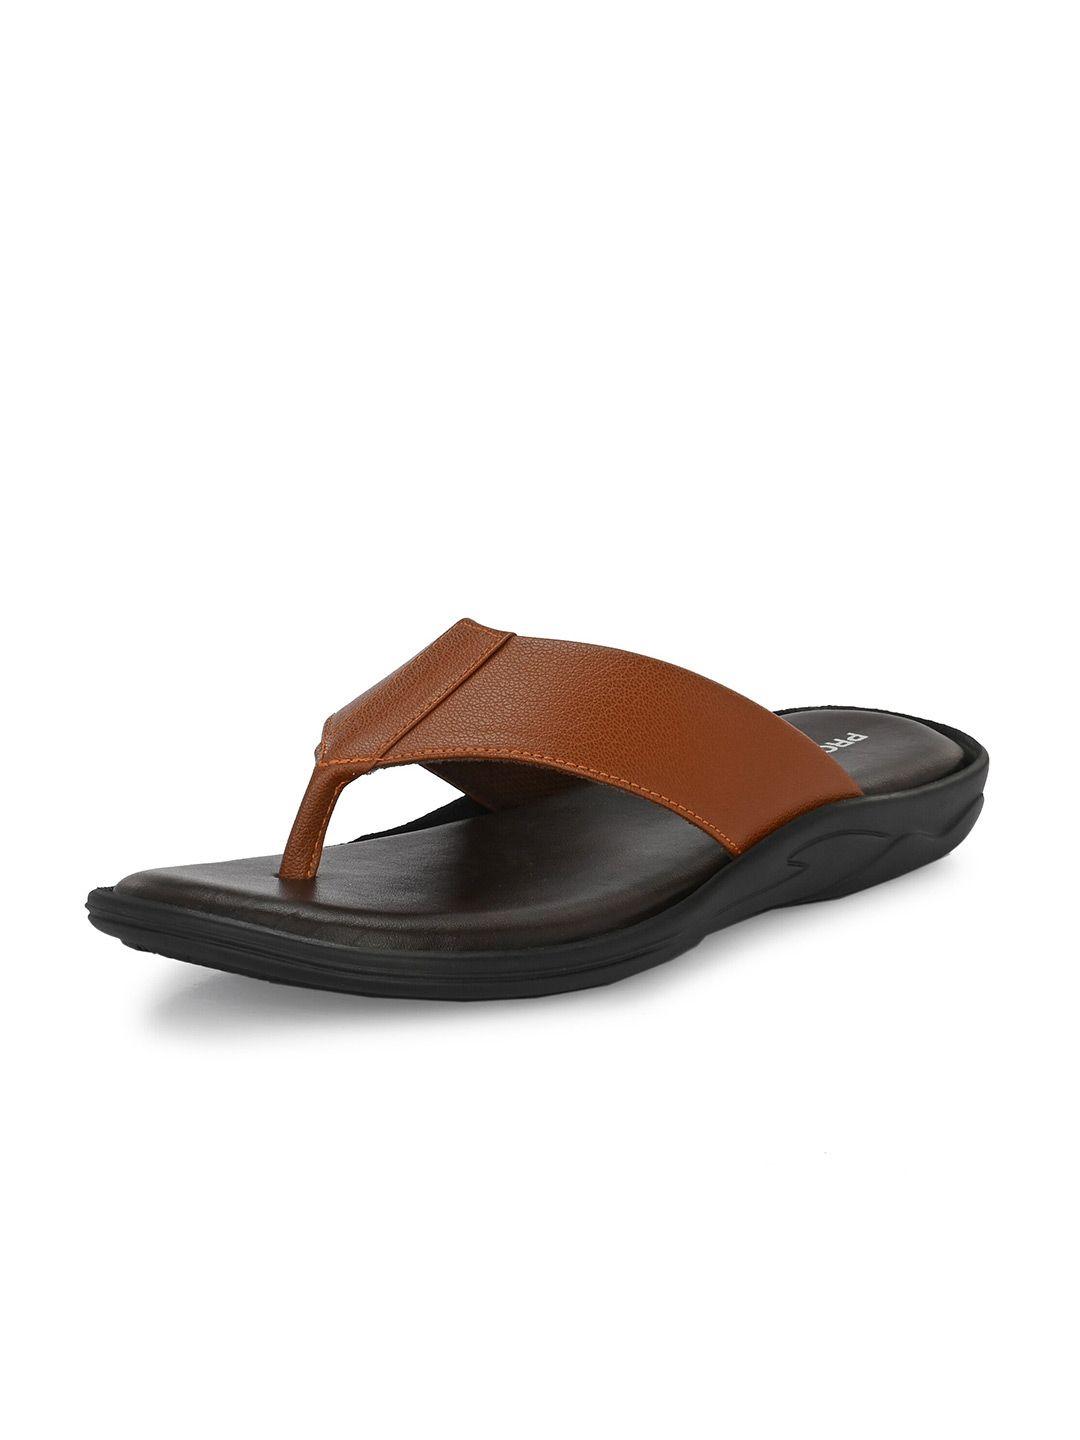 provogue-men-tan-&-black-comfort-sandals